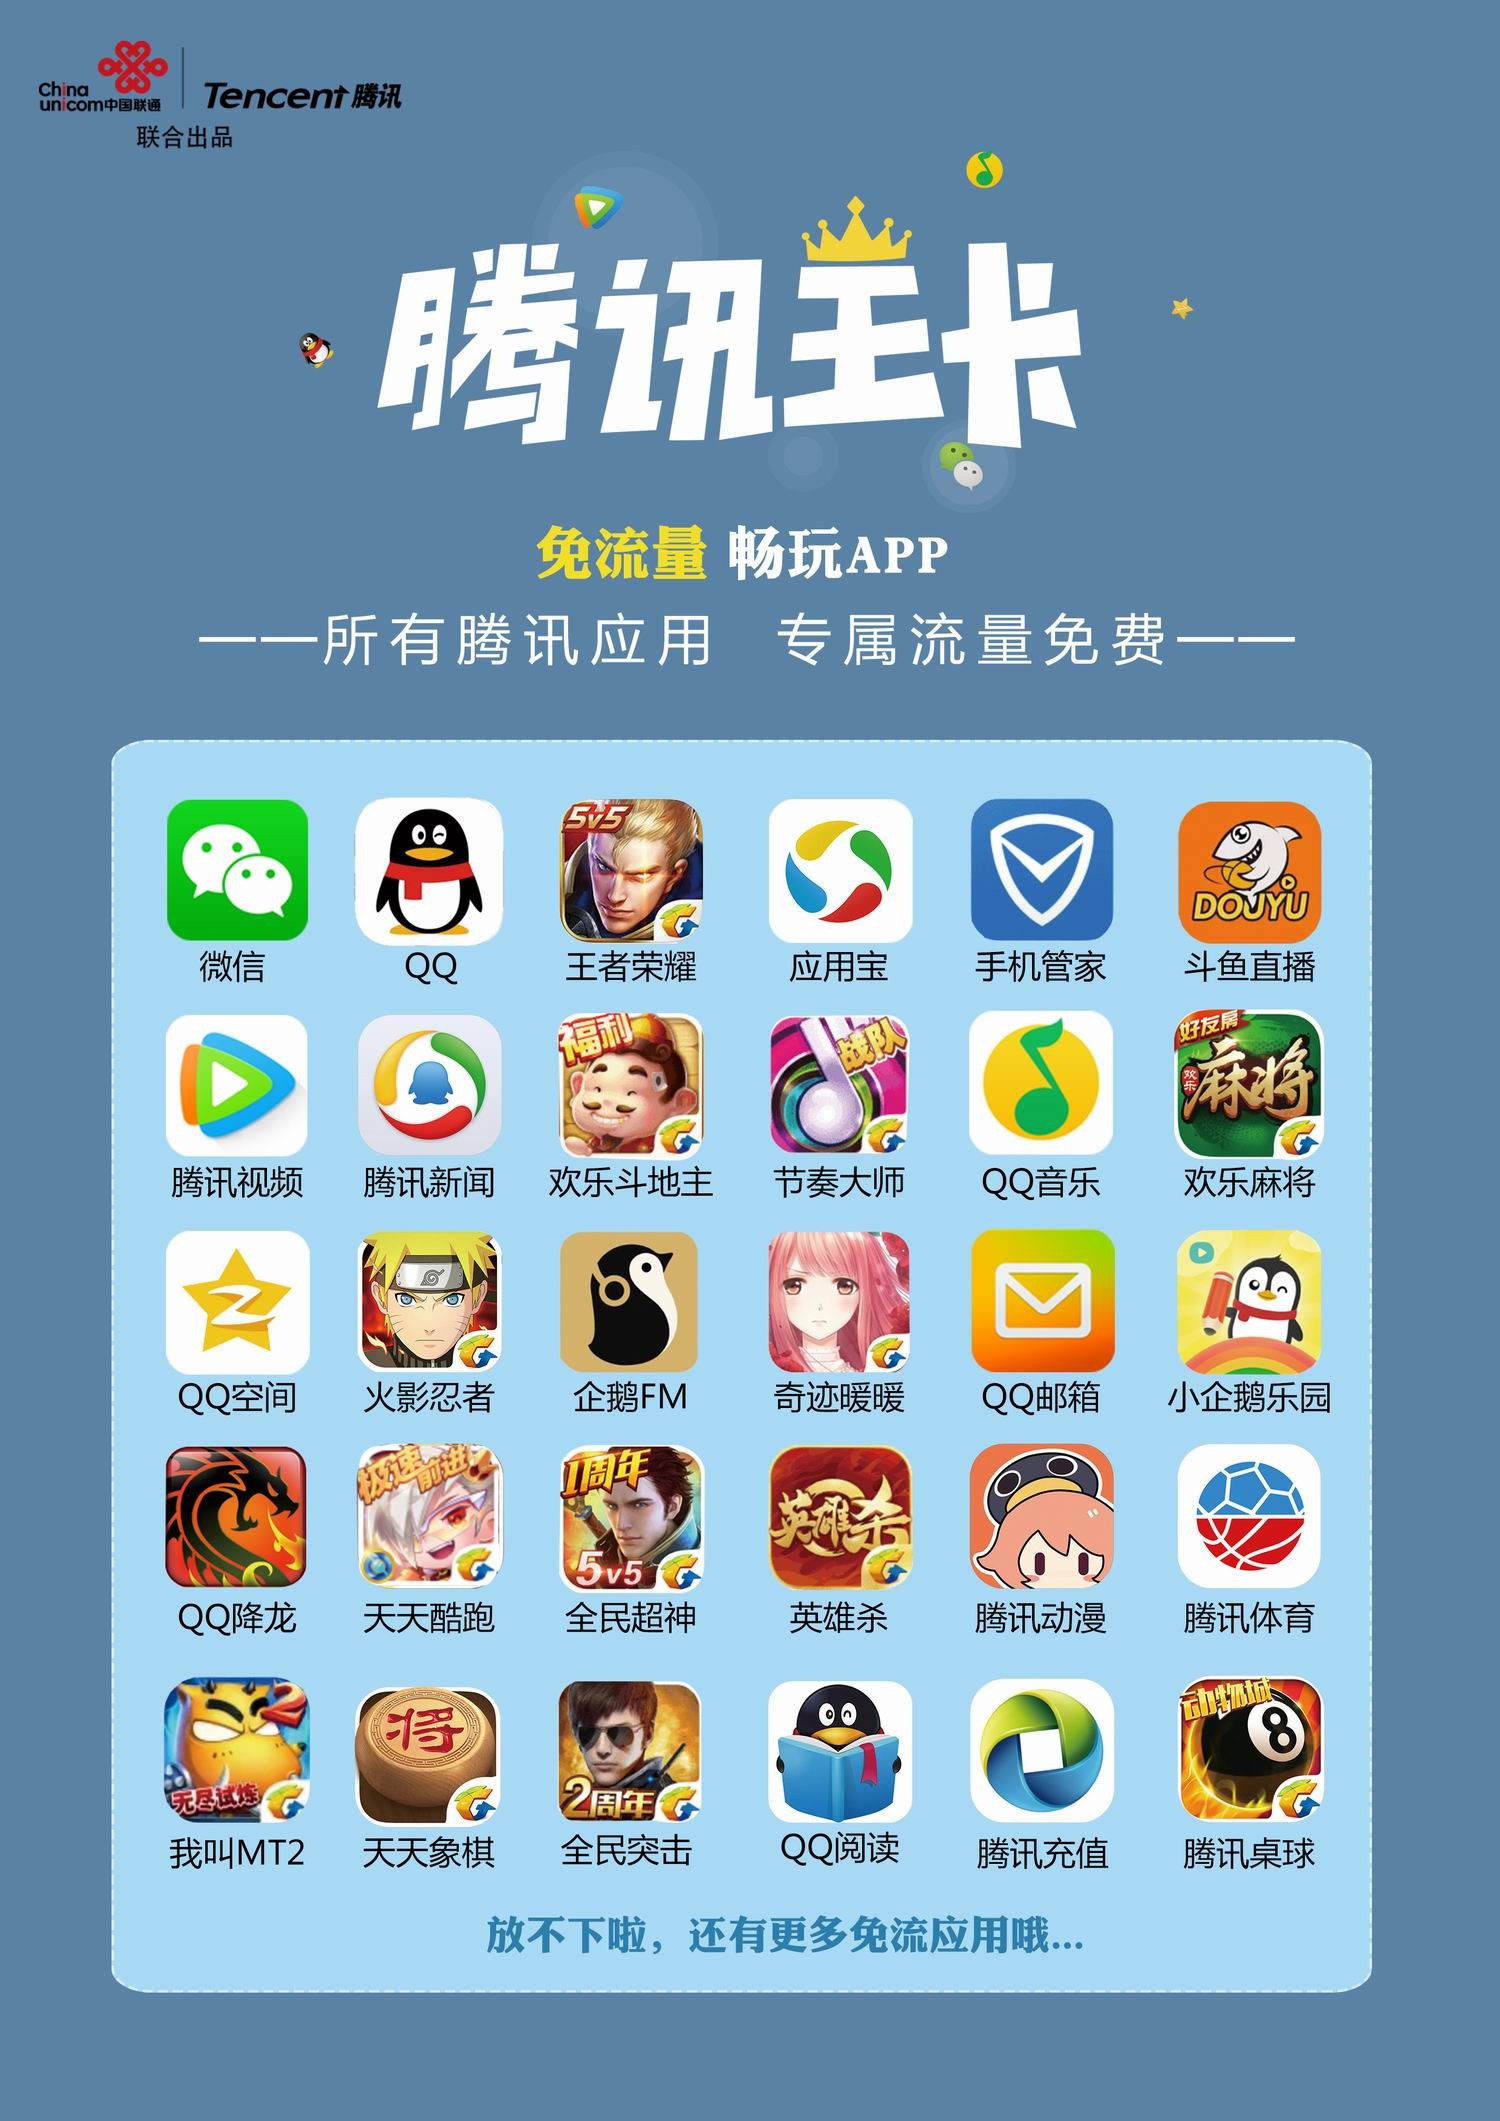 腾讯王卡,带你免流量畅玩百款腾讯app!